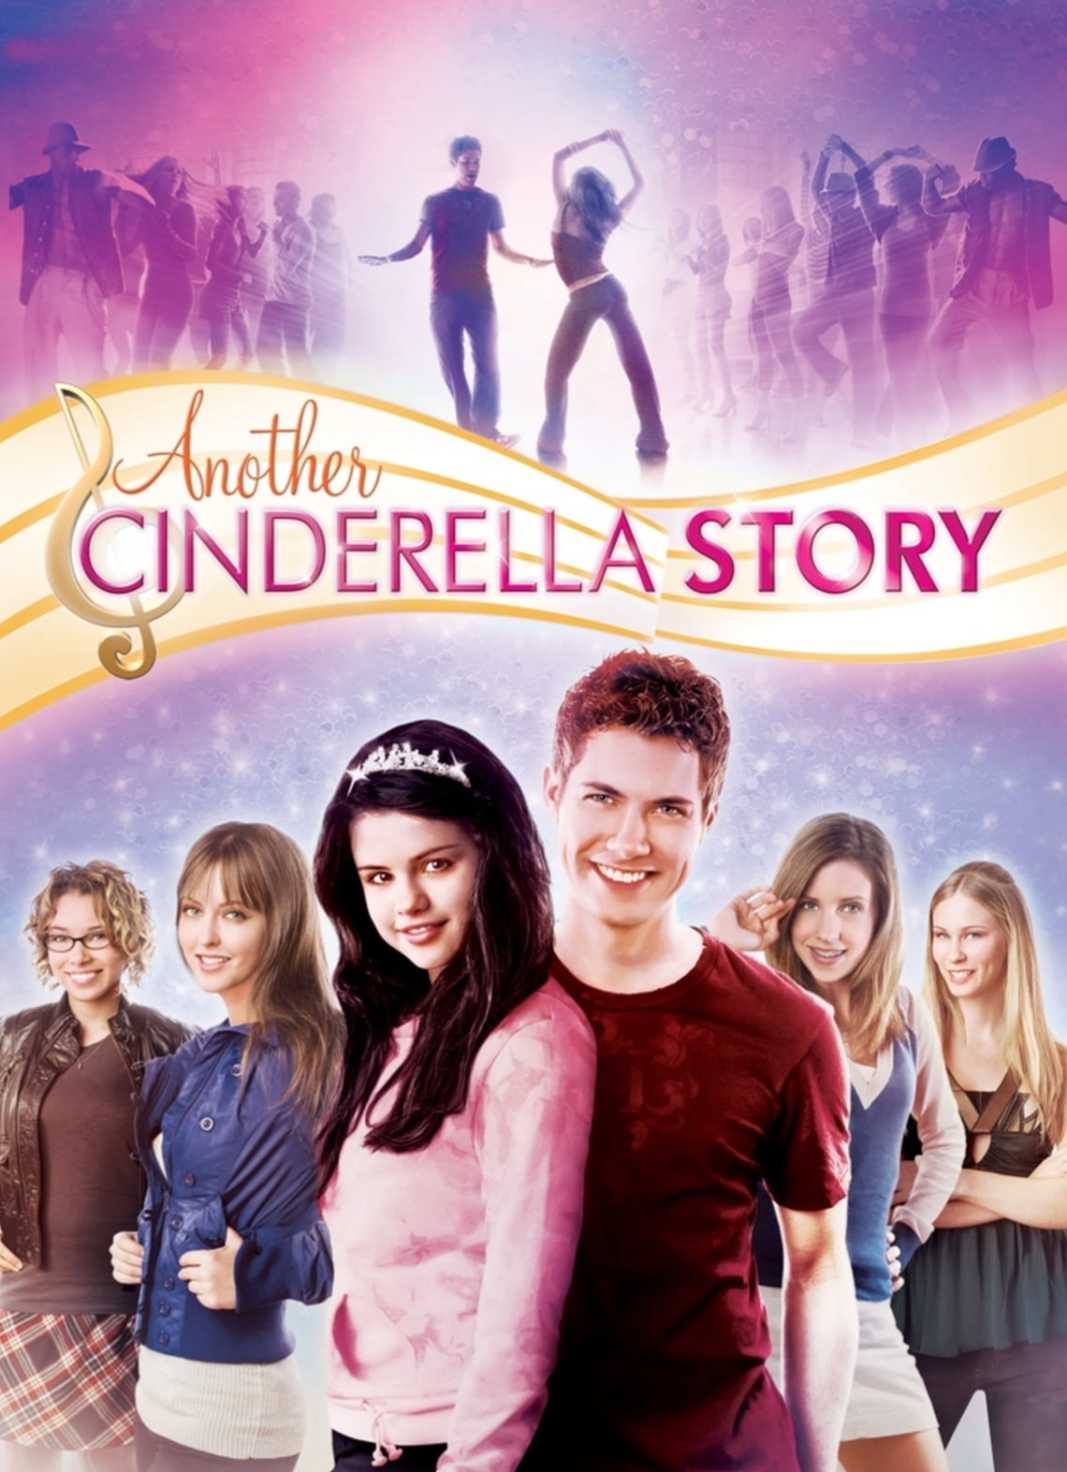 فیلم یک داستان سیندرلایی دیگر Another Cinderella Story 2008 با زیرنویس فارسی